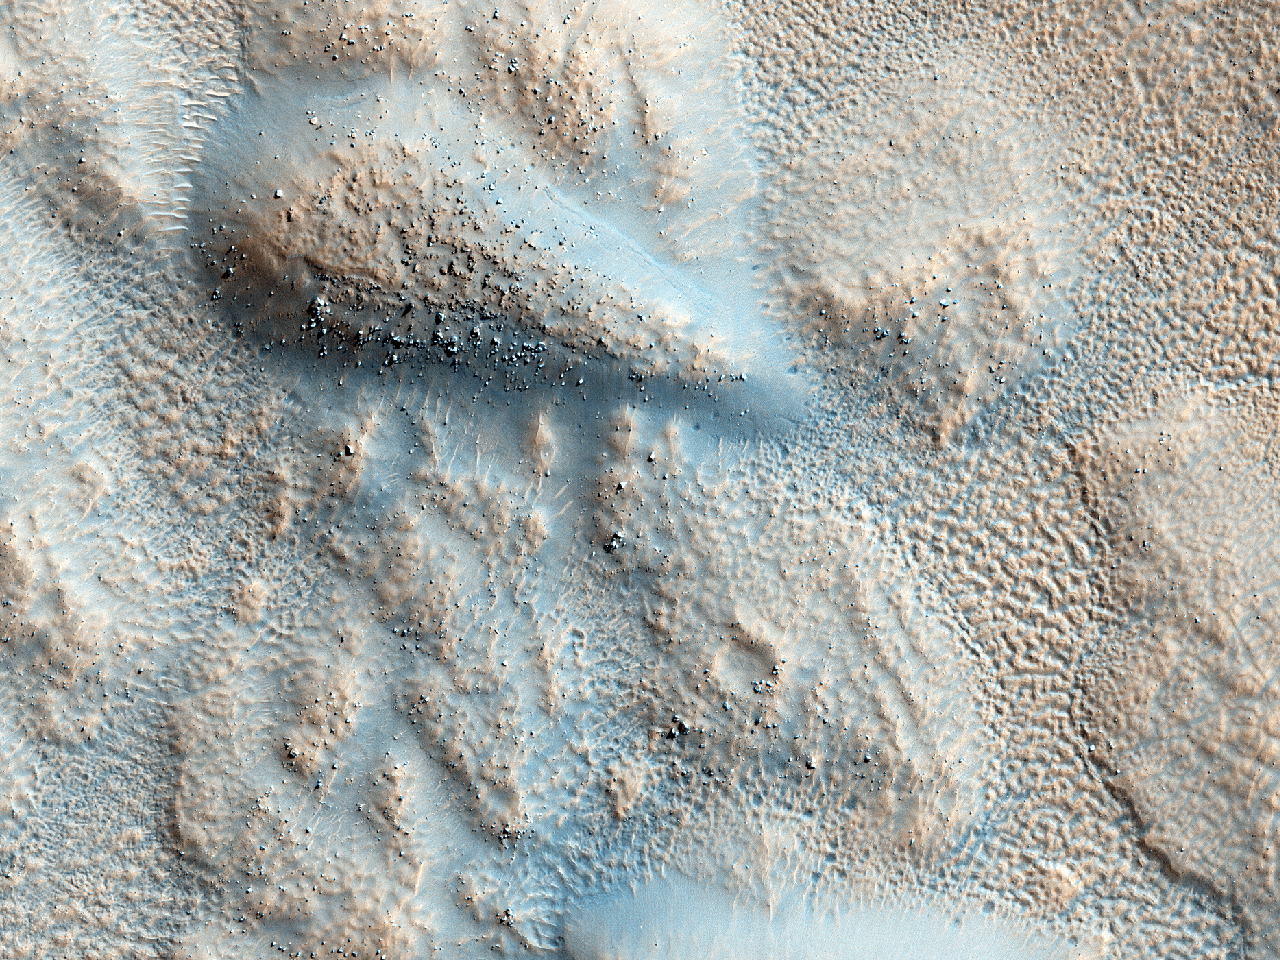 Tumuli in margine crateris eiecti